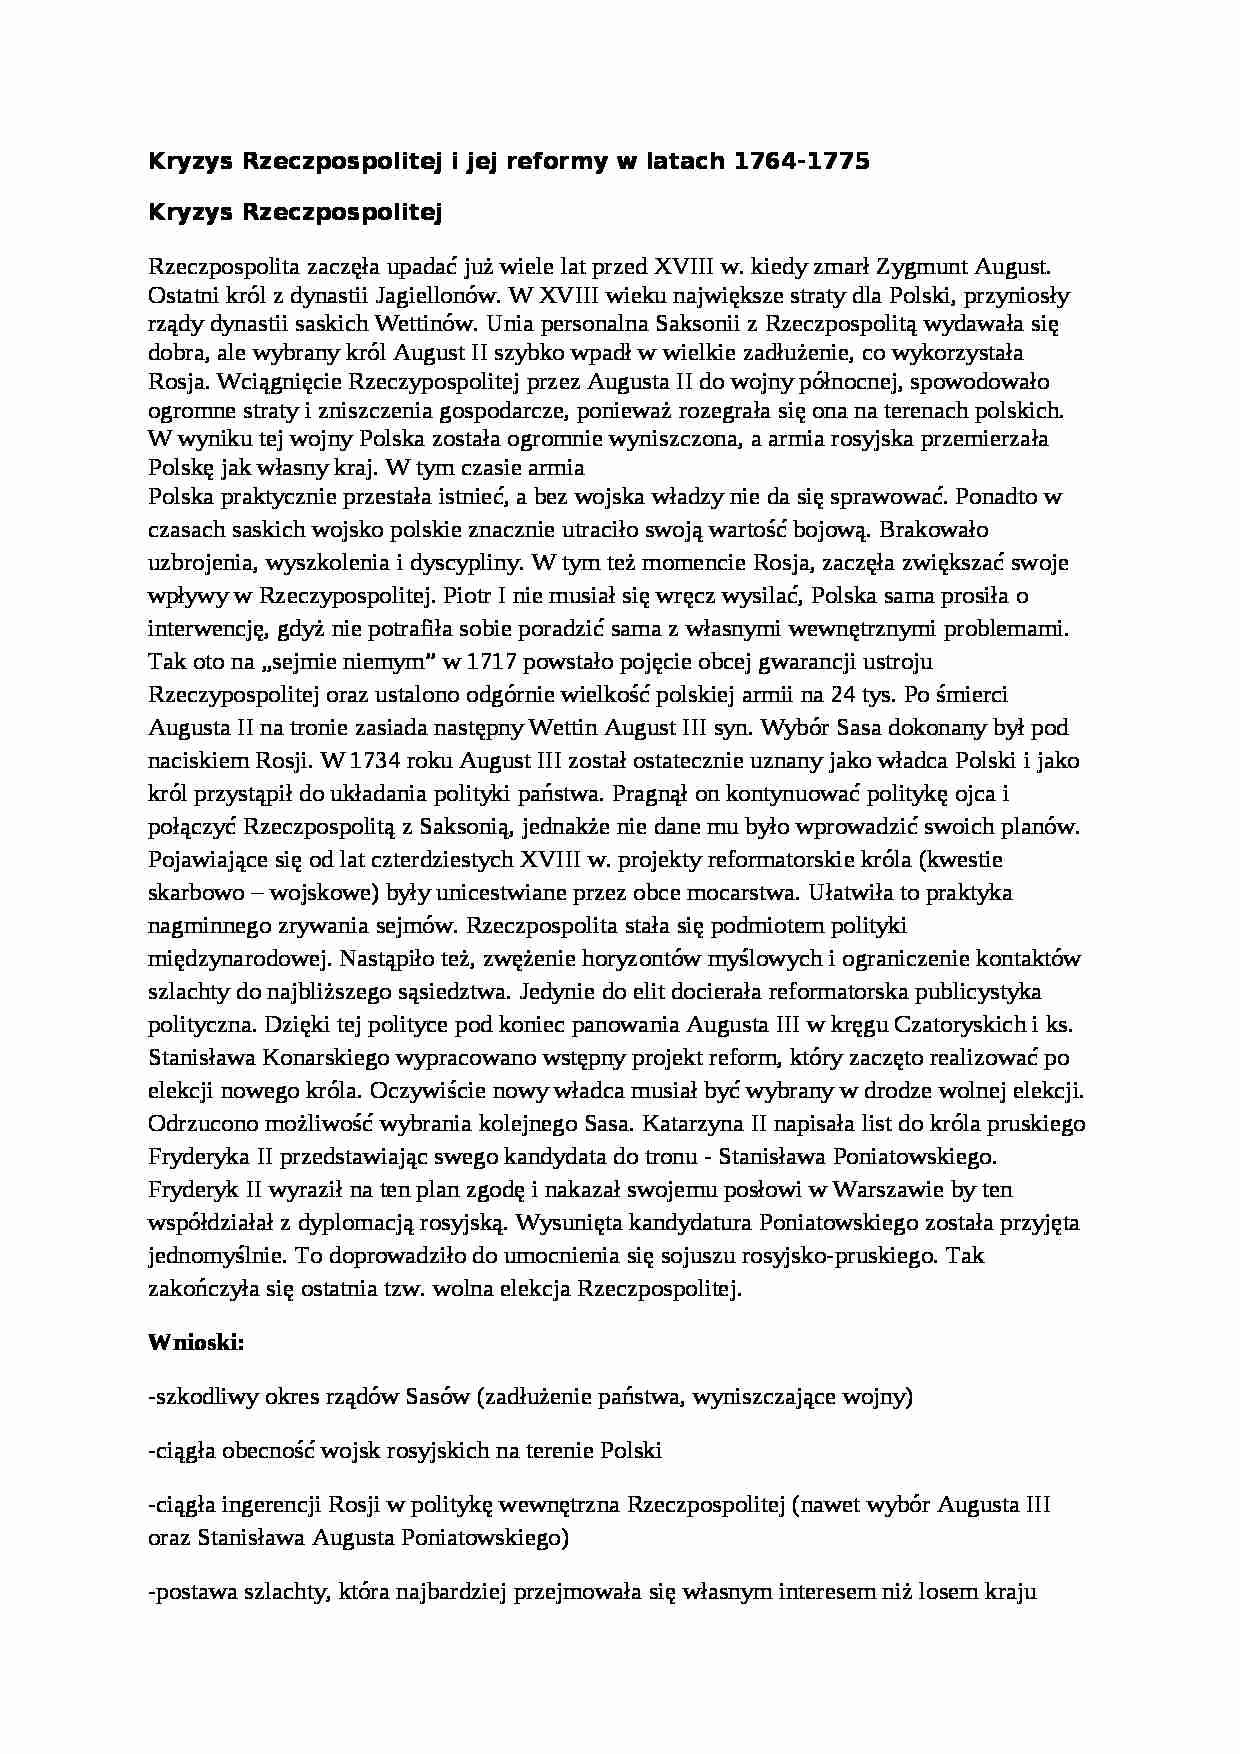 Kryzys Rzeczpospolitej i jej reformy w latach 1764-75-opracowanie - strona 1